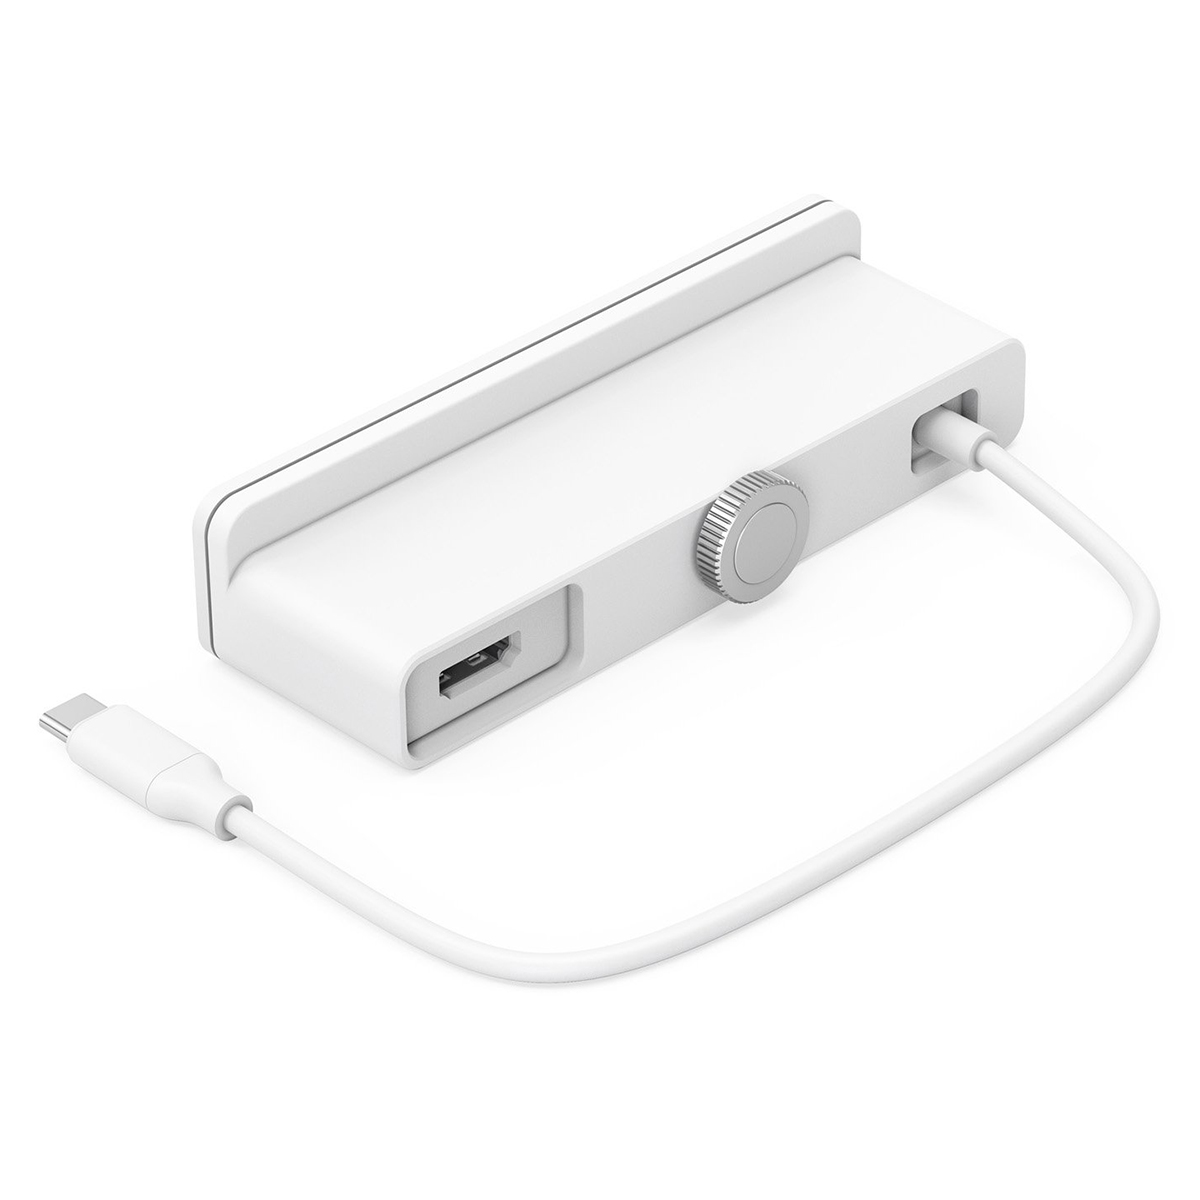 Hub USB-C Hyper Drive 6 in 1 for iMac 24-inch